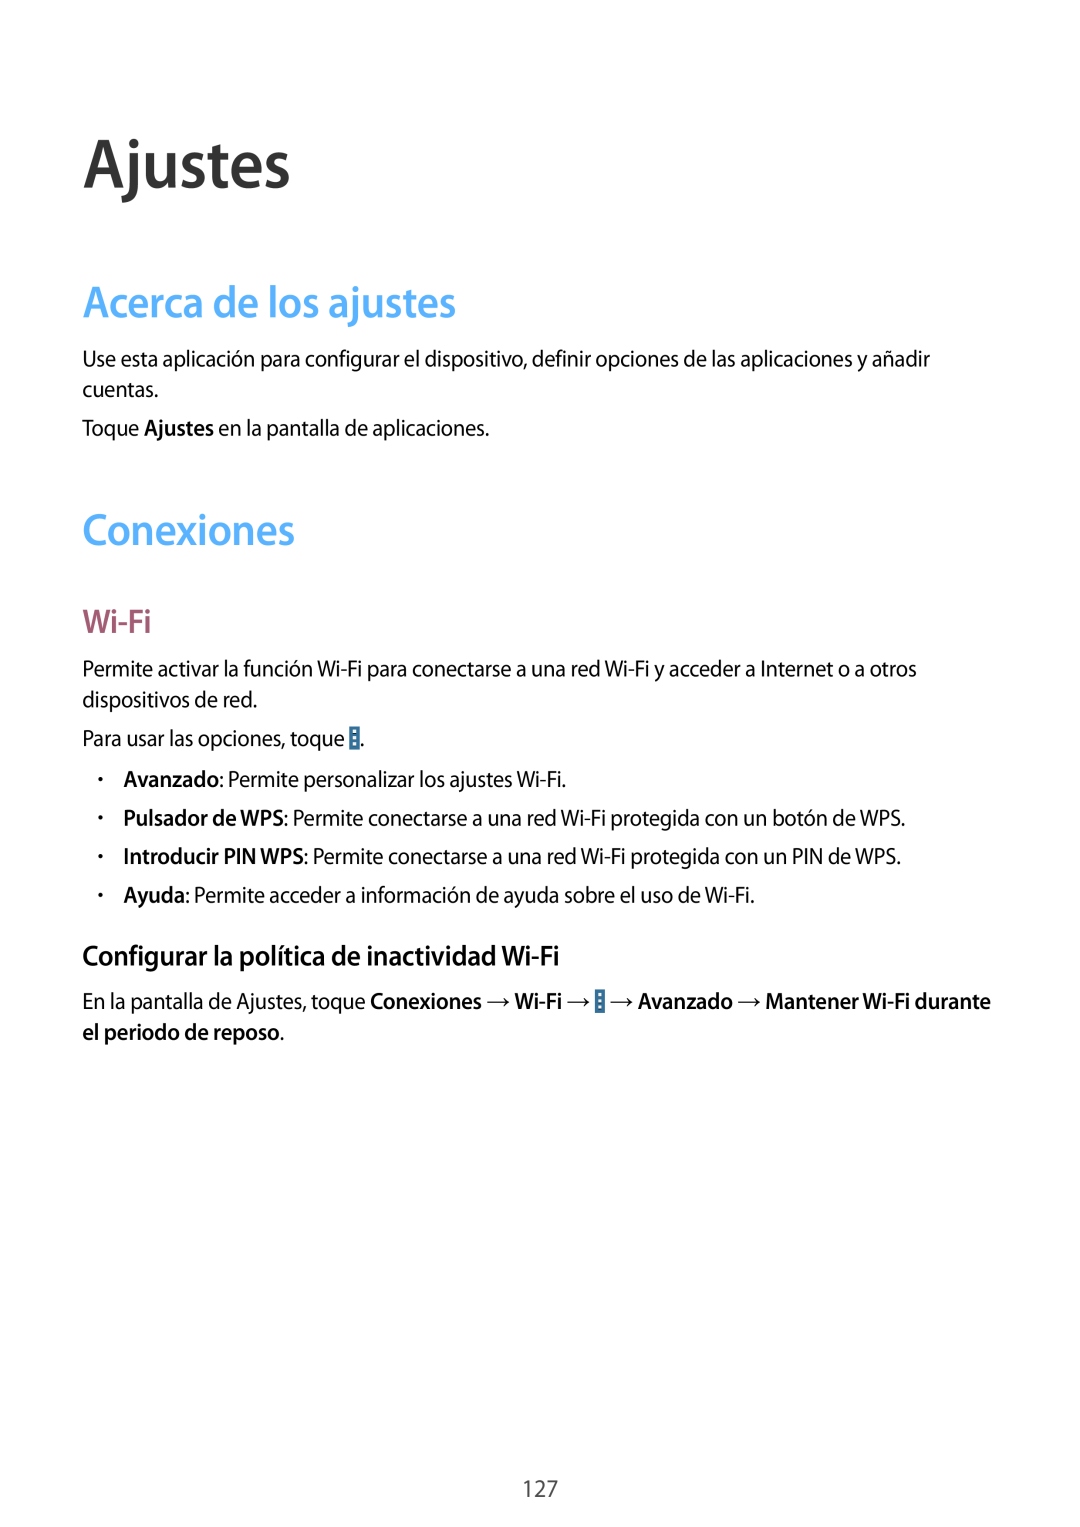 Samsung SM-T320NZWAXEO manual Ajustes, Acerca de los ajustes, Conexiones, Configurar la política de inactividad Wi-Fi 